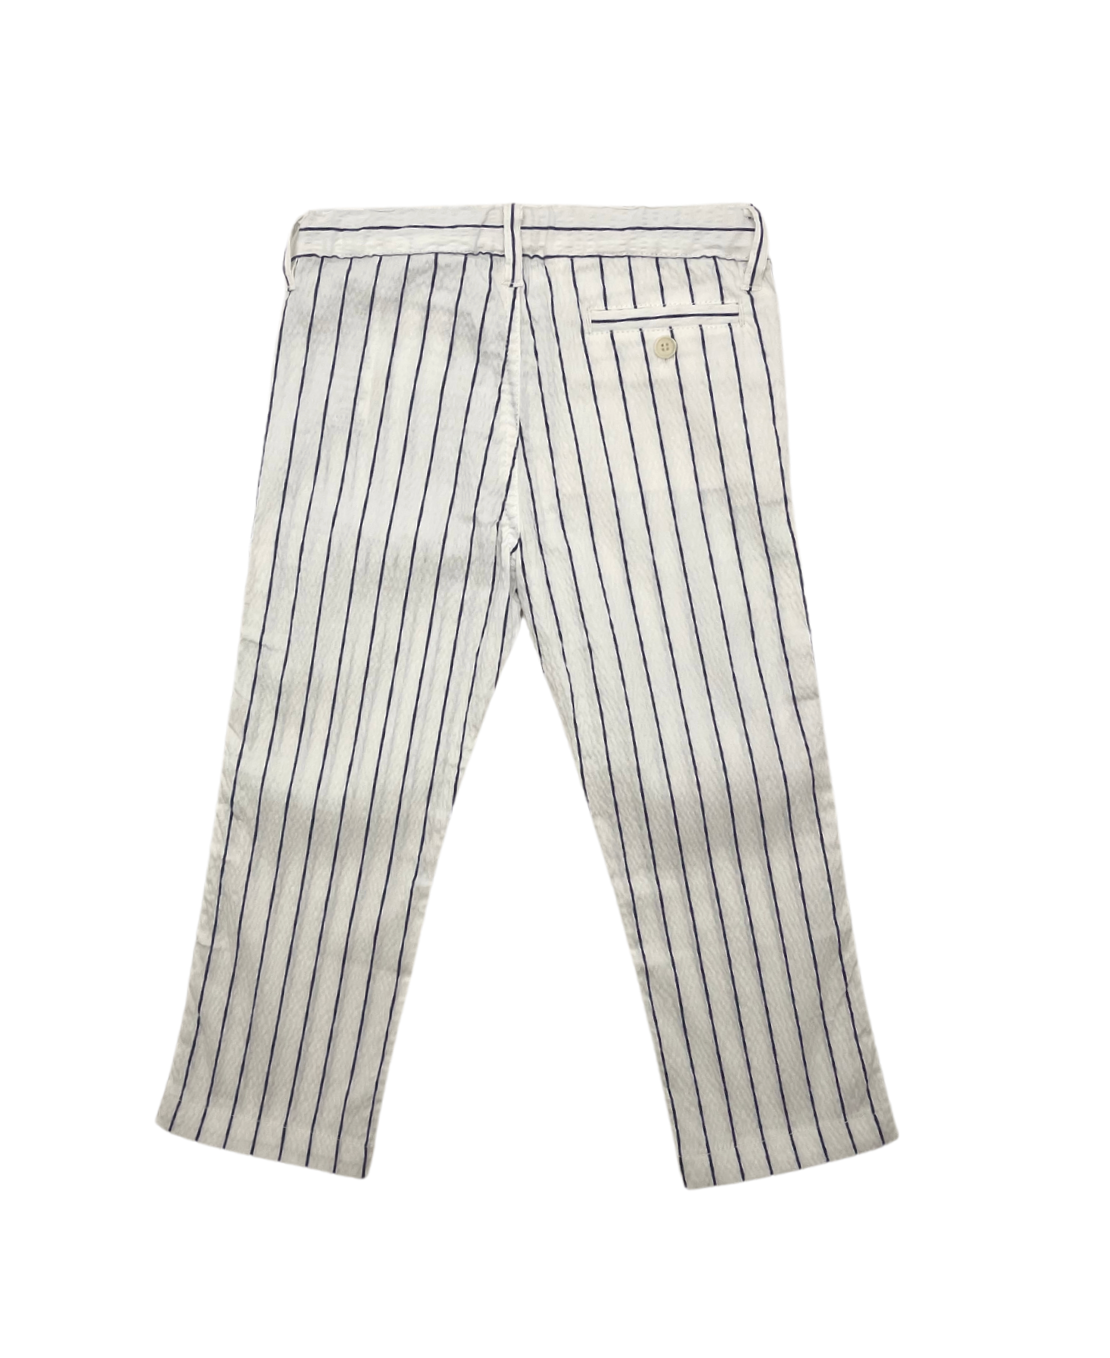 IL GUFO - Pantalon rayé blanc & bleu - 3 ans